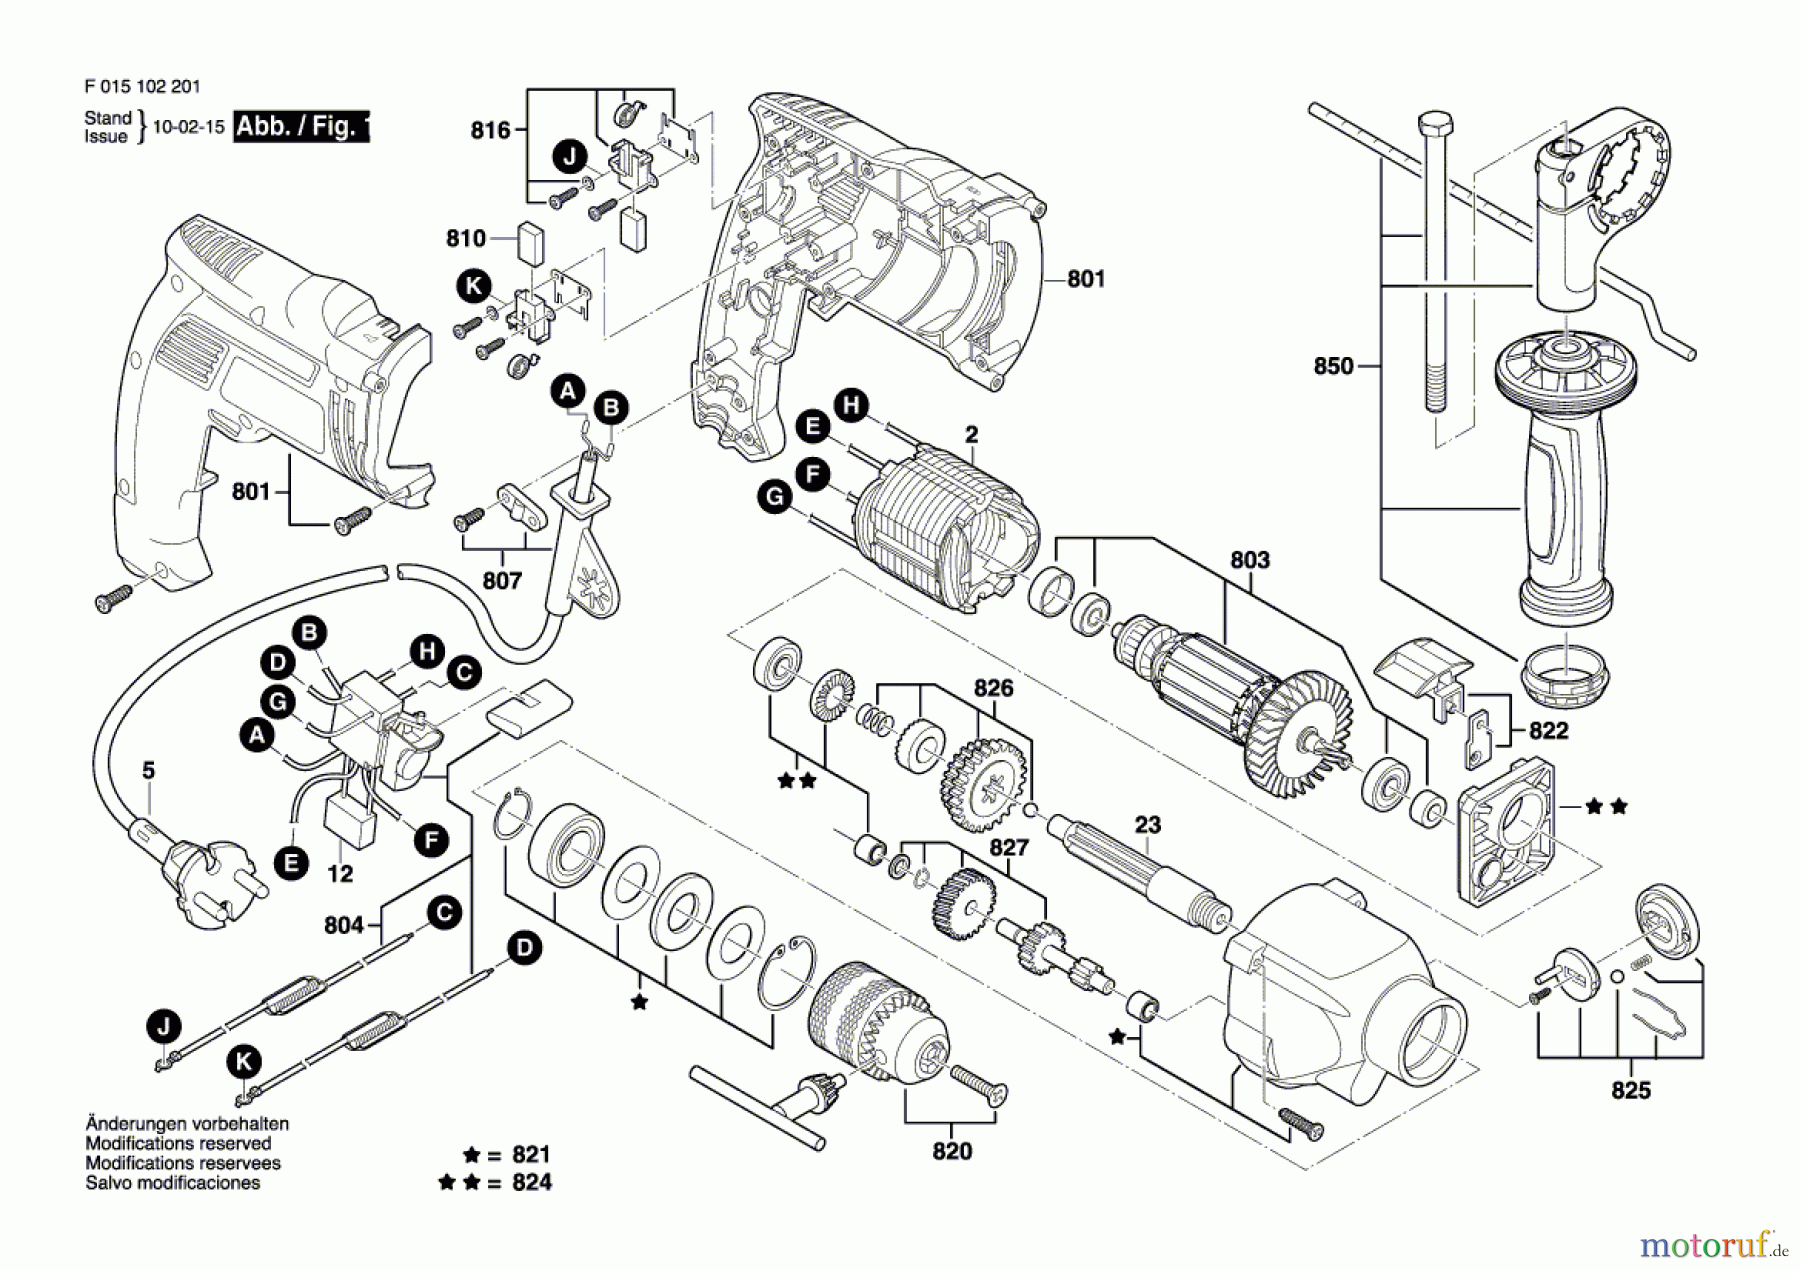  Bosch Werkzeug Schlagbohrmaschine 1023 Seite 1